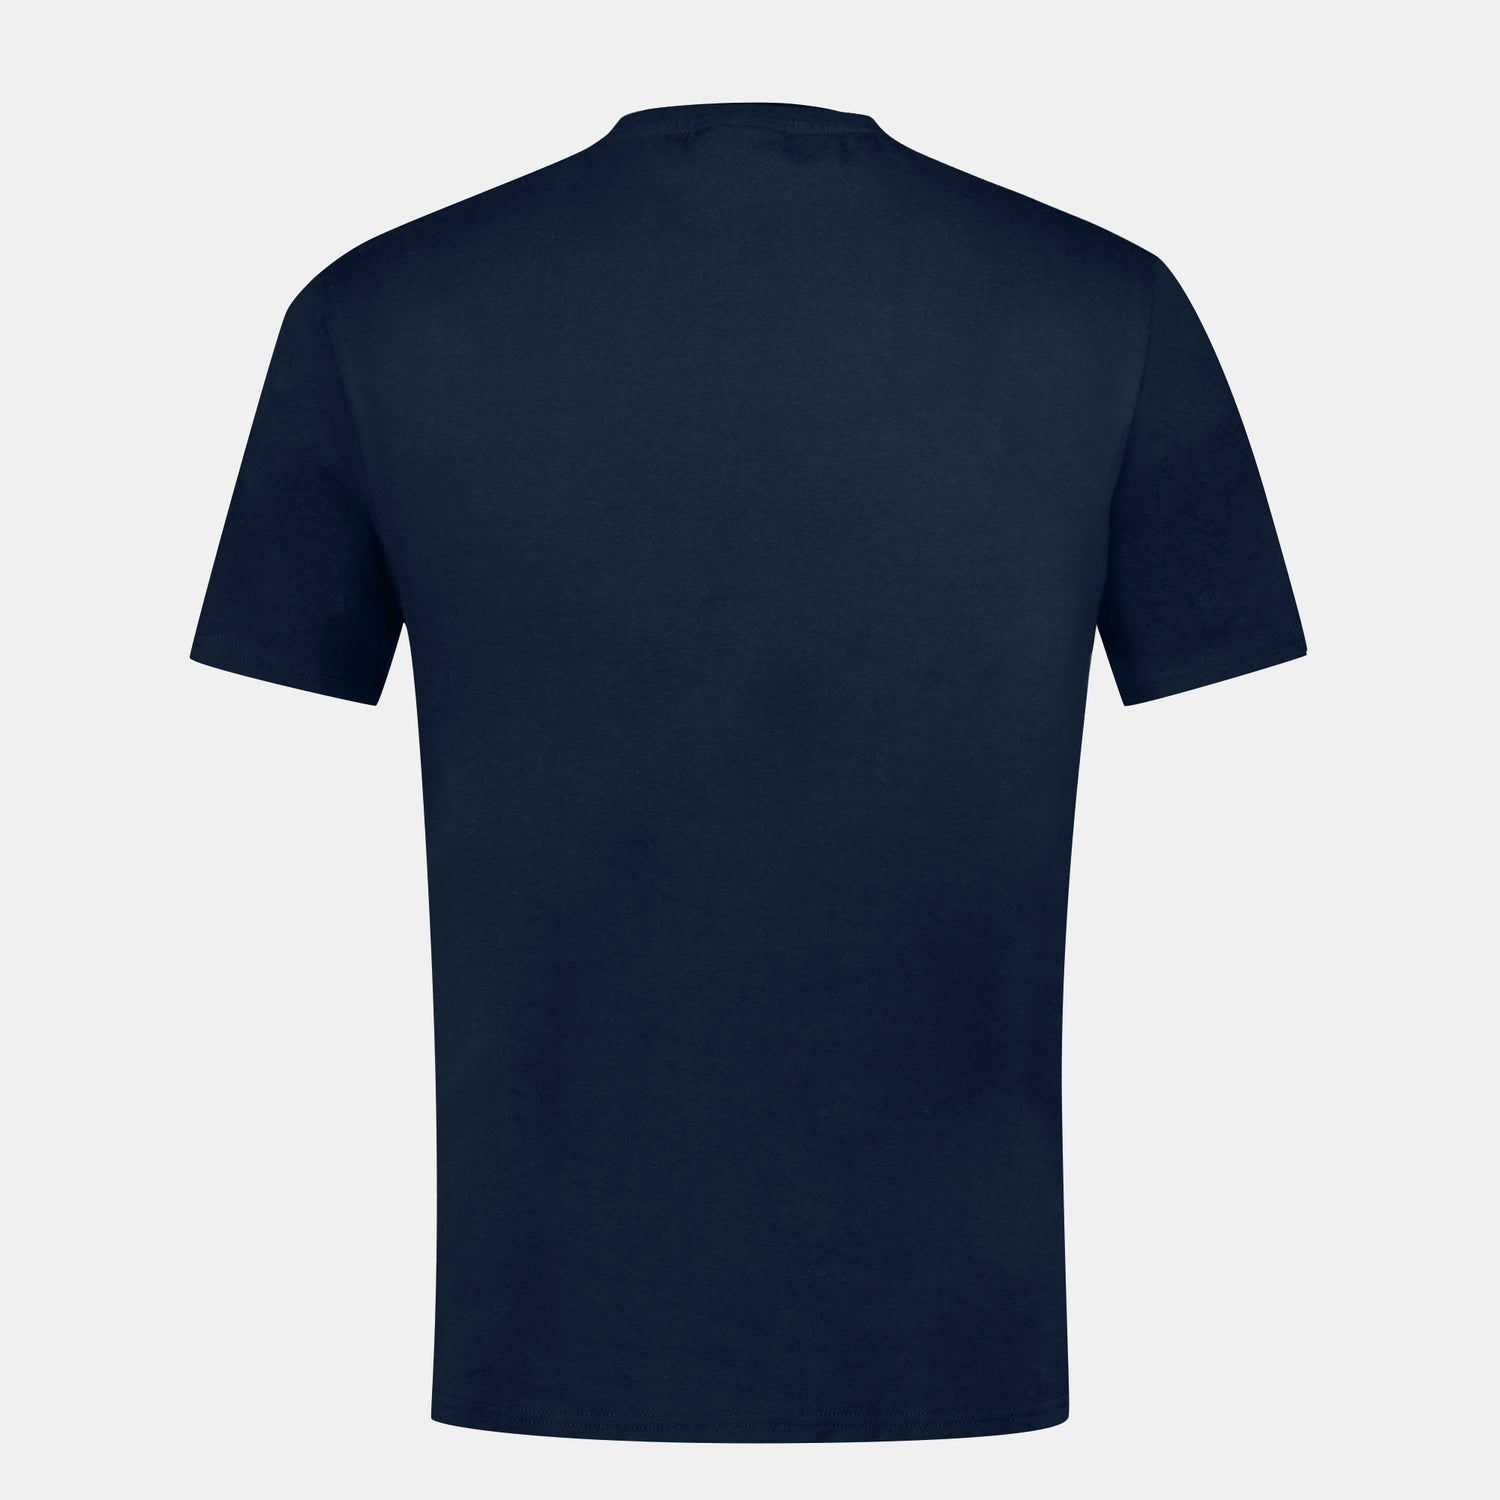 2411174-LA PAIX Tee SS N°1 M sky captain | T-shirt motif «La Paix»  Homme